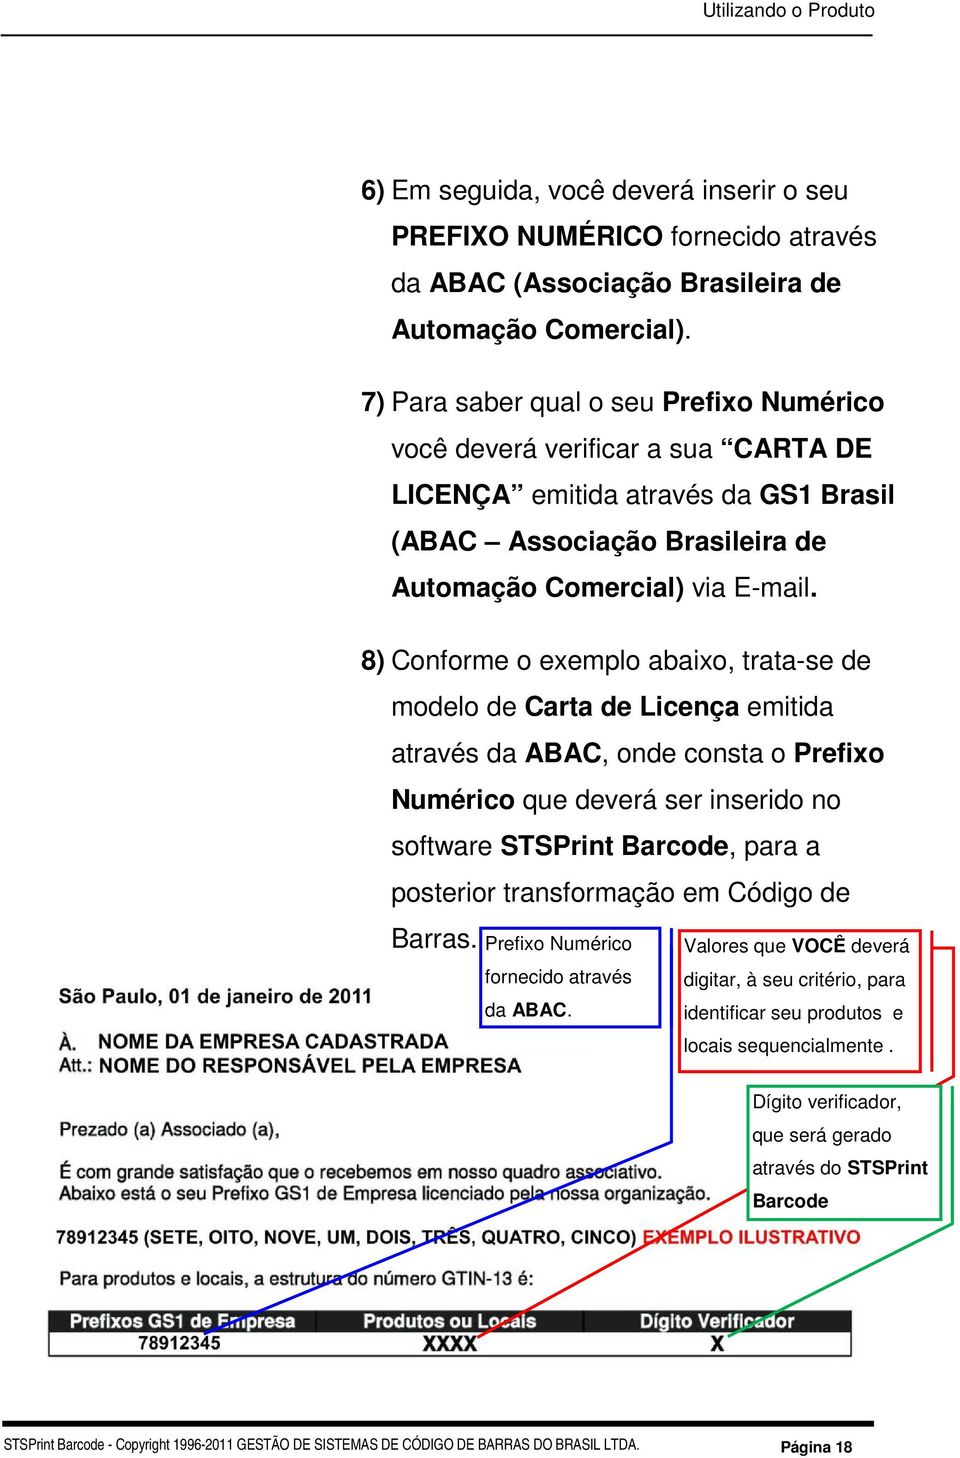 8) Conforme o exemplo abaixo, trata-se de modelo de Carta de Licença emitida através da ABAC, onde consta o Prefixo Numérico que deverá ser inserido no software STSPrint Barcode, para a posterior